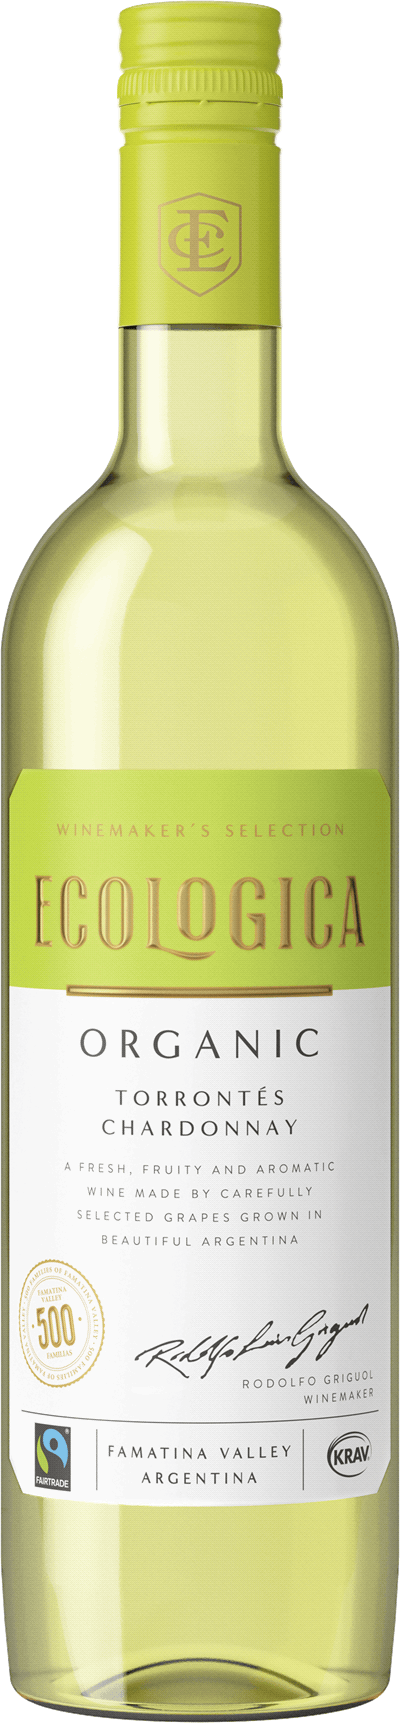 Flaska med Ecologica